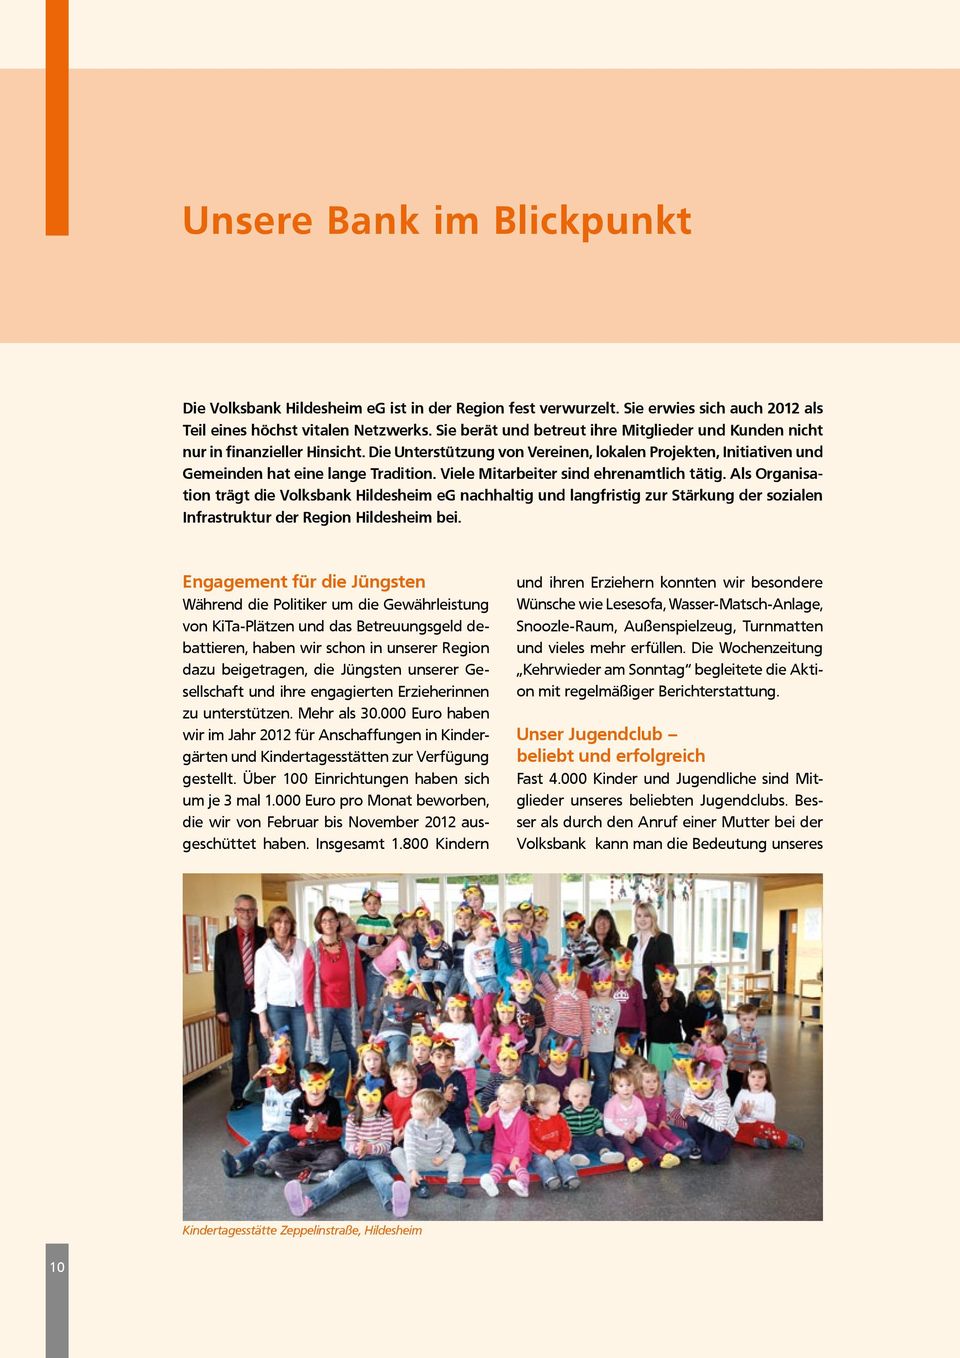 Viele Mitarbeiter sind ehrenamtlich tätig. Als Organisation trägt die Volksbank Hildesheim eg nachhaltig und langfristig zur Stärkung der sozialen Infrastruktur der Region Hildesheim bei.